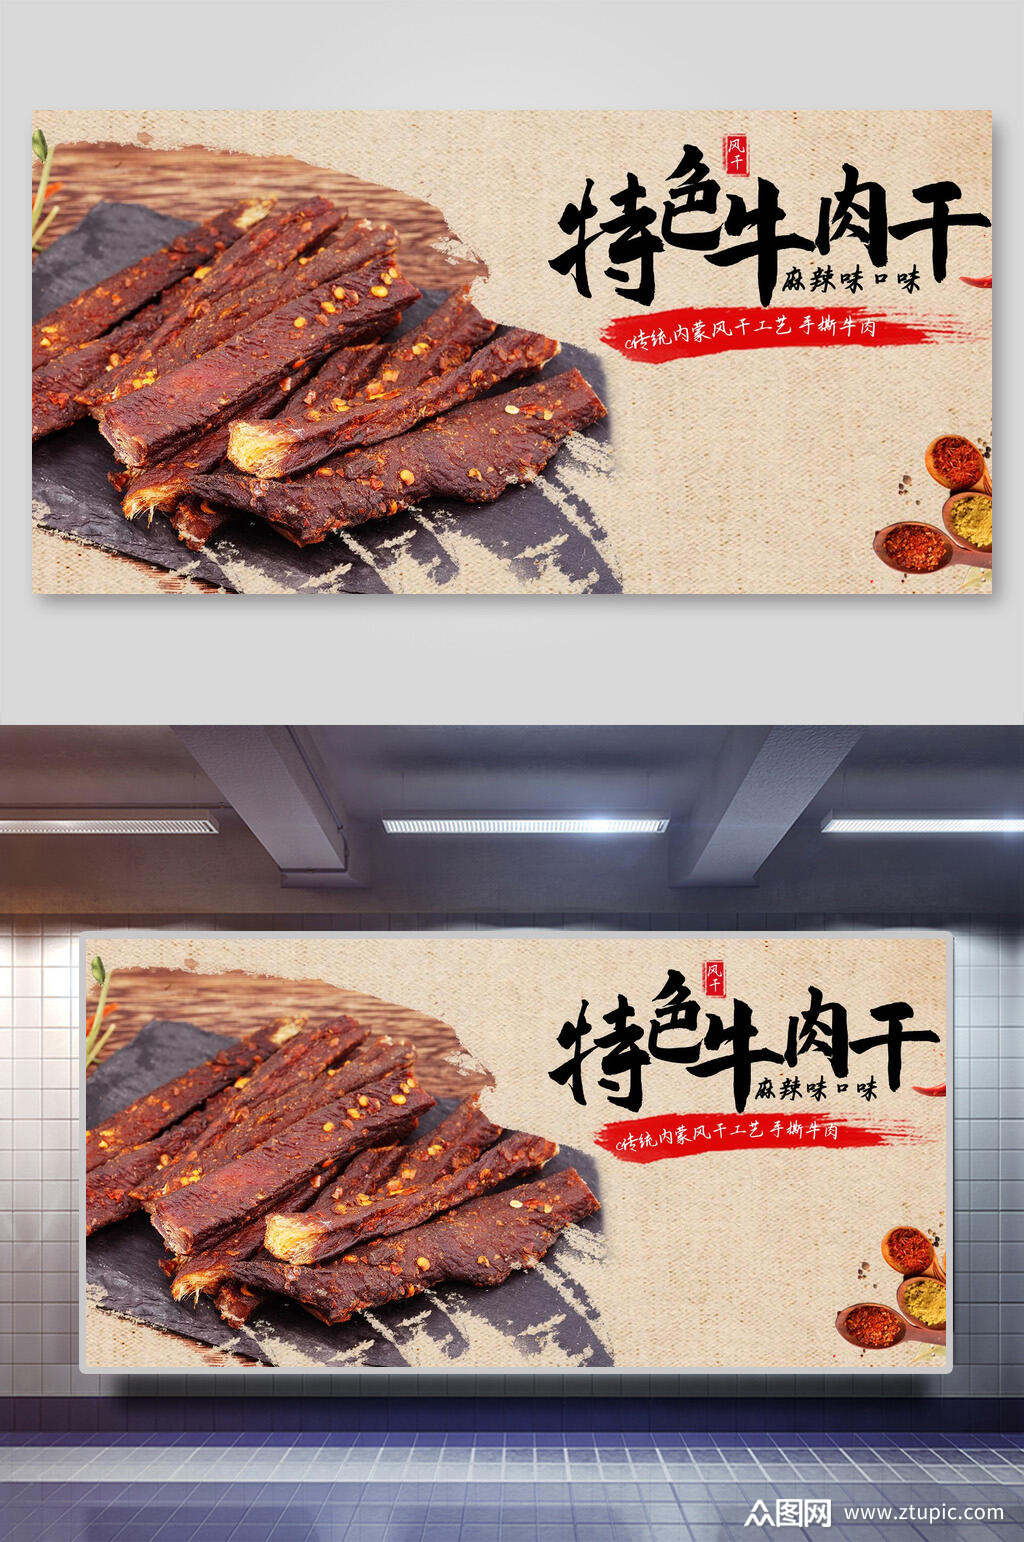 牛肉干banner海报素材免费下载,本作品是由退网上传的原创平面广告